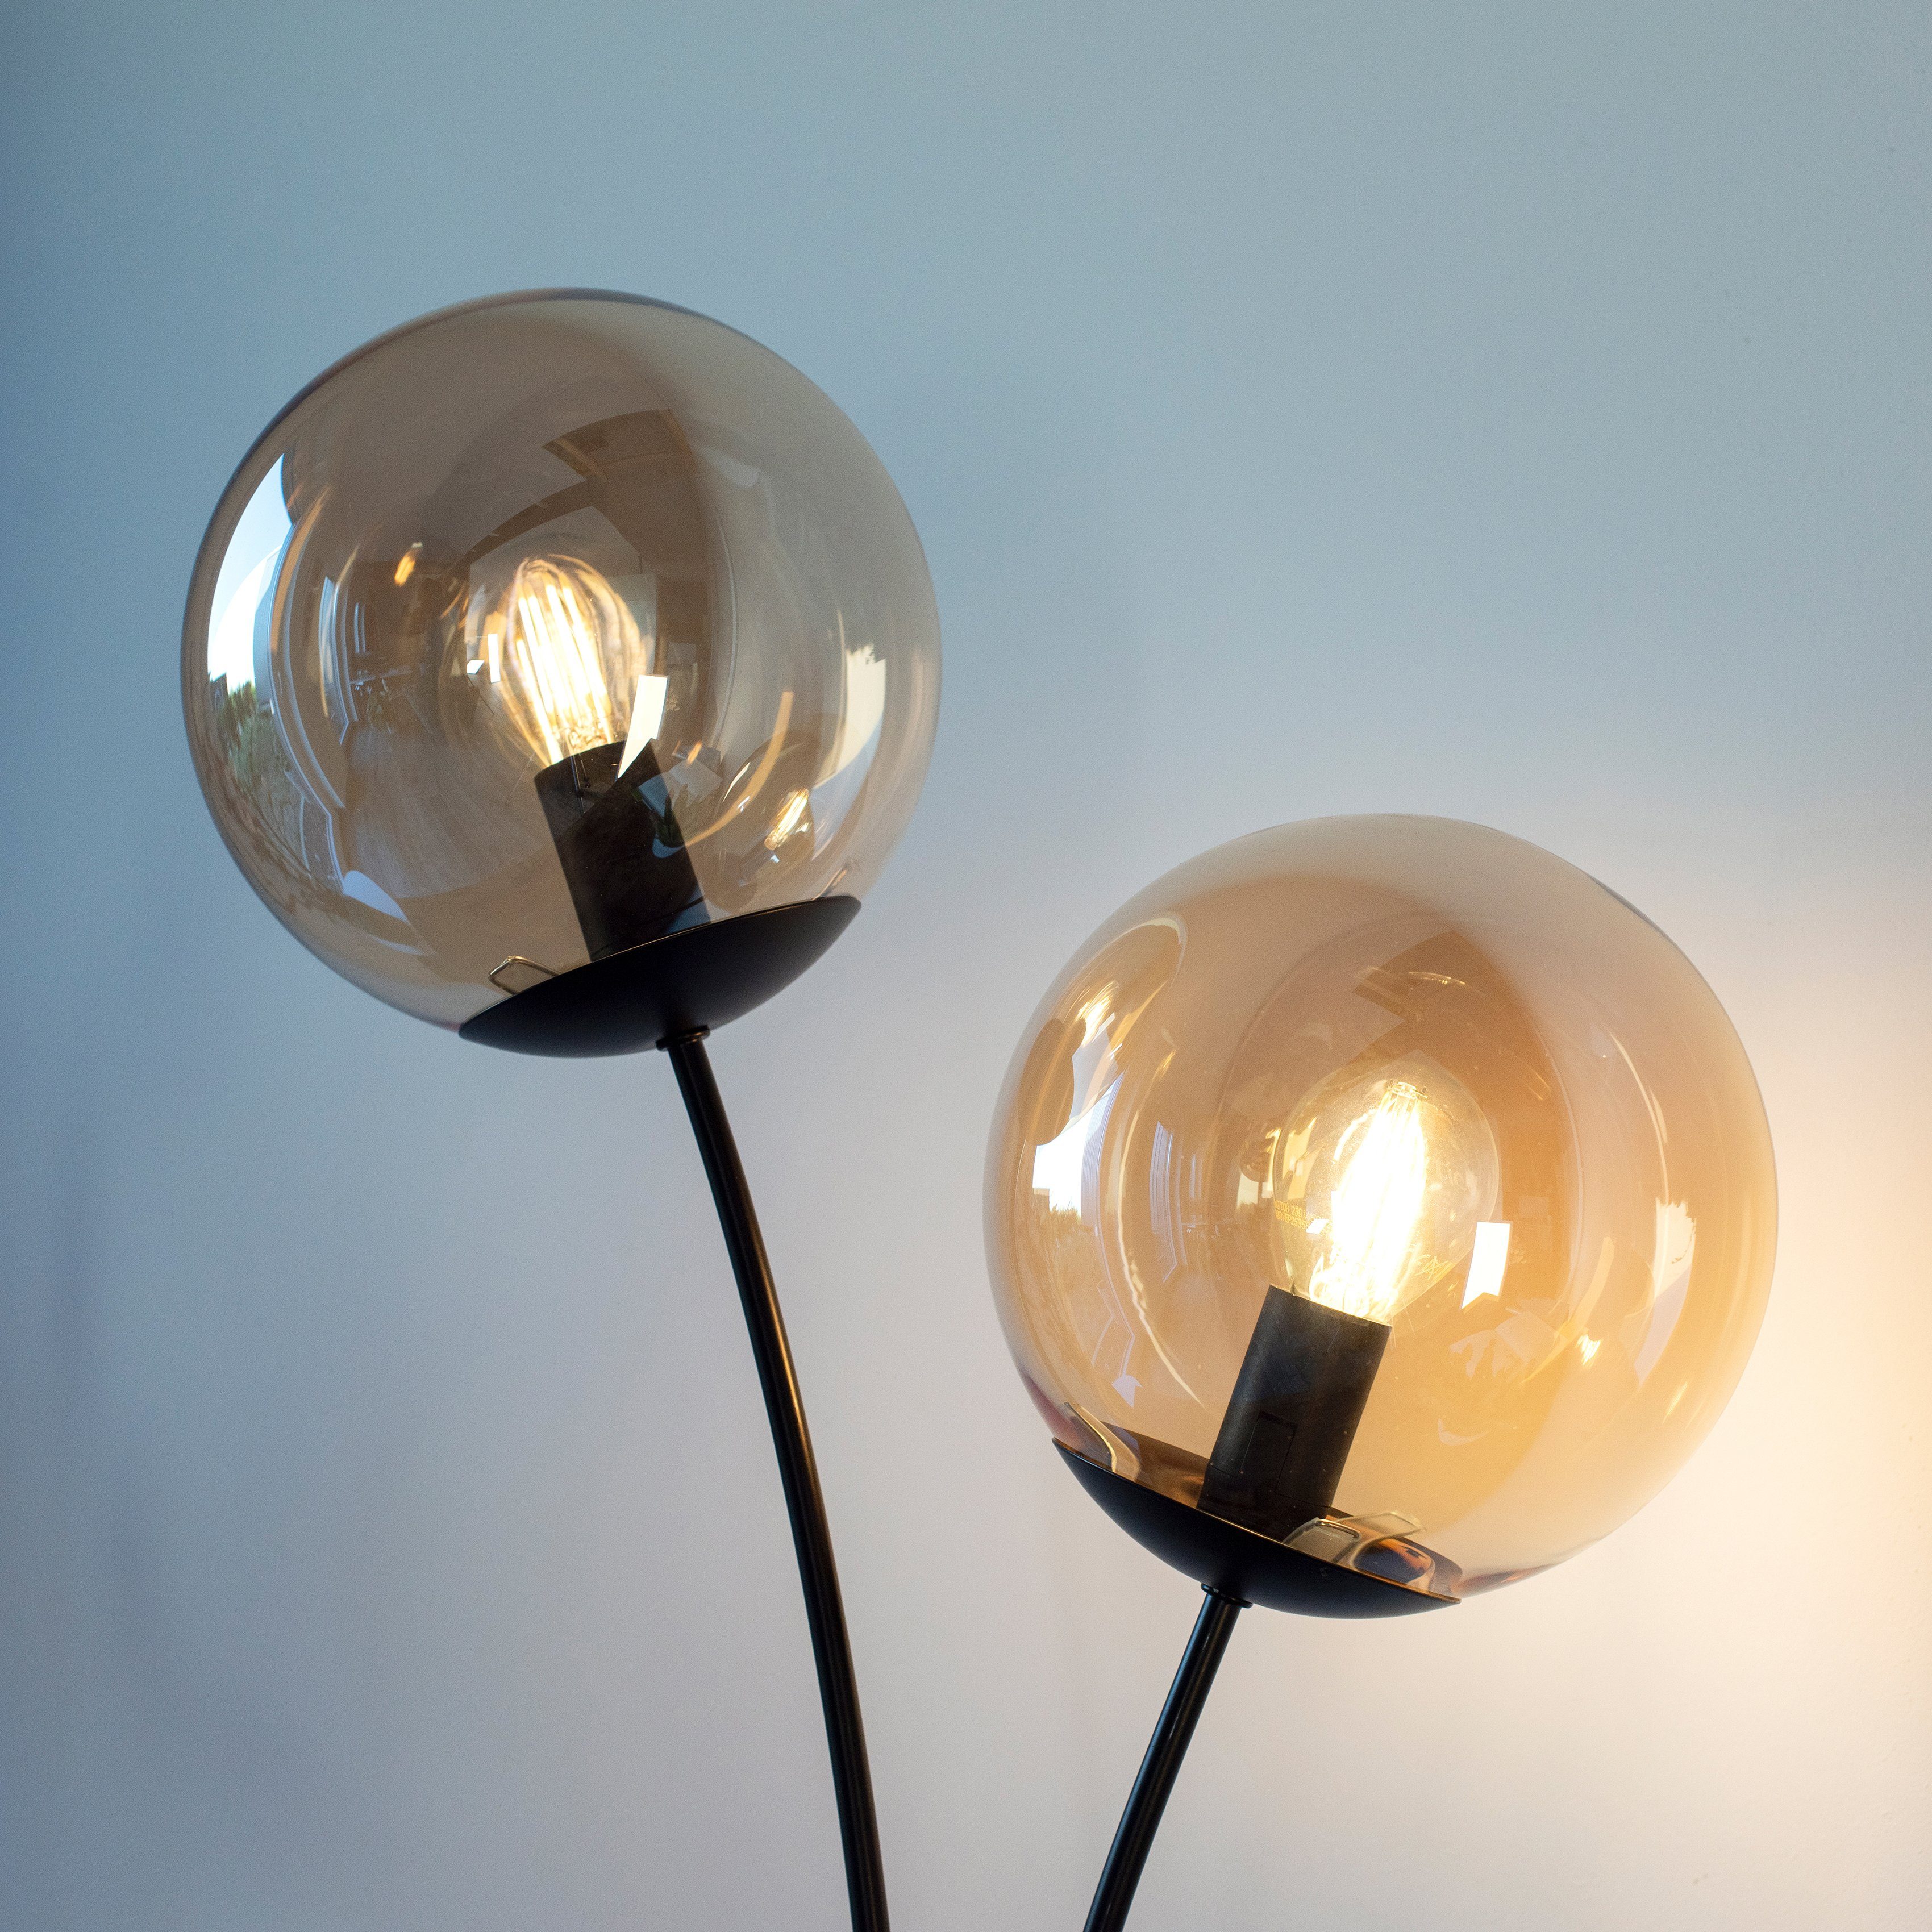 andas Stehlampe Leuchtmittel, Ein-/Ausschalter, schwarz ohne Oberfläche lackiert amberfarbigen mit Glaskörpern, Nymölla, großen